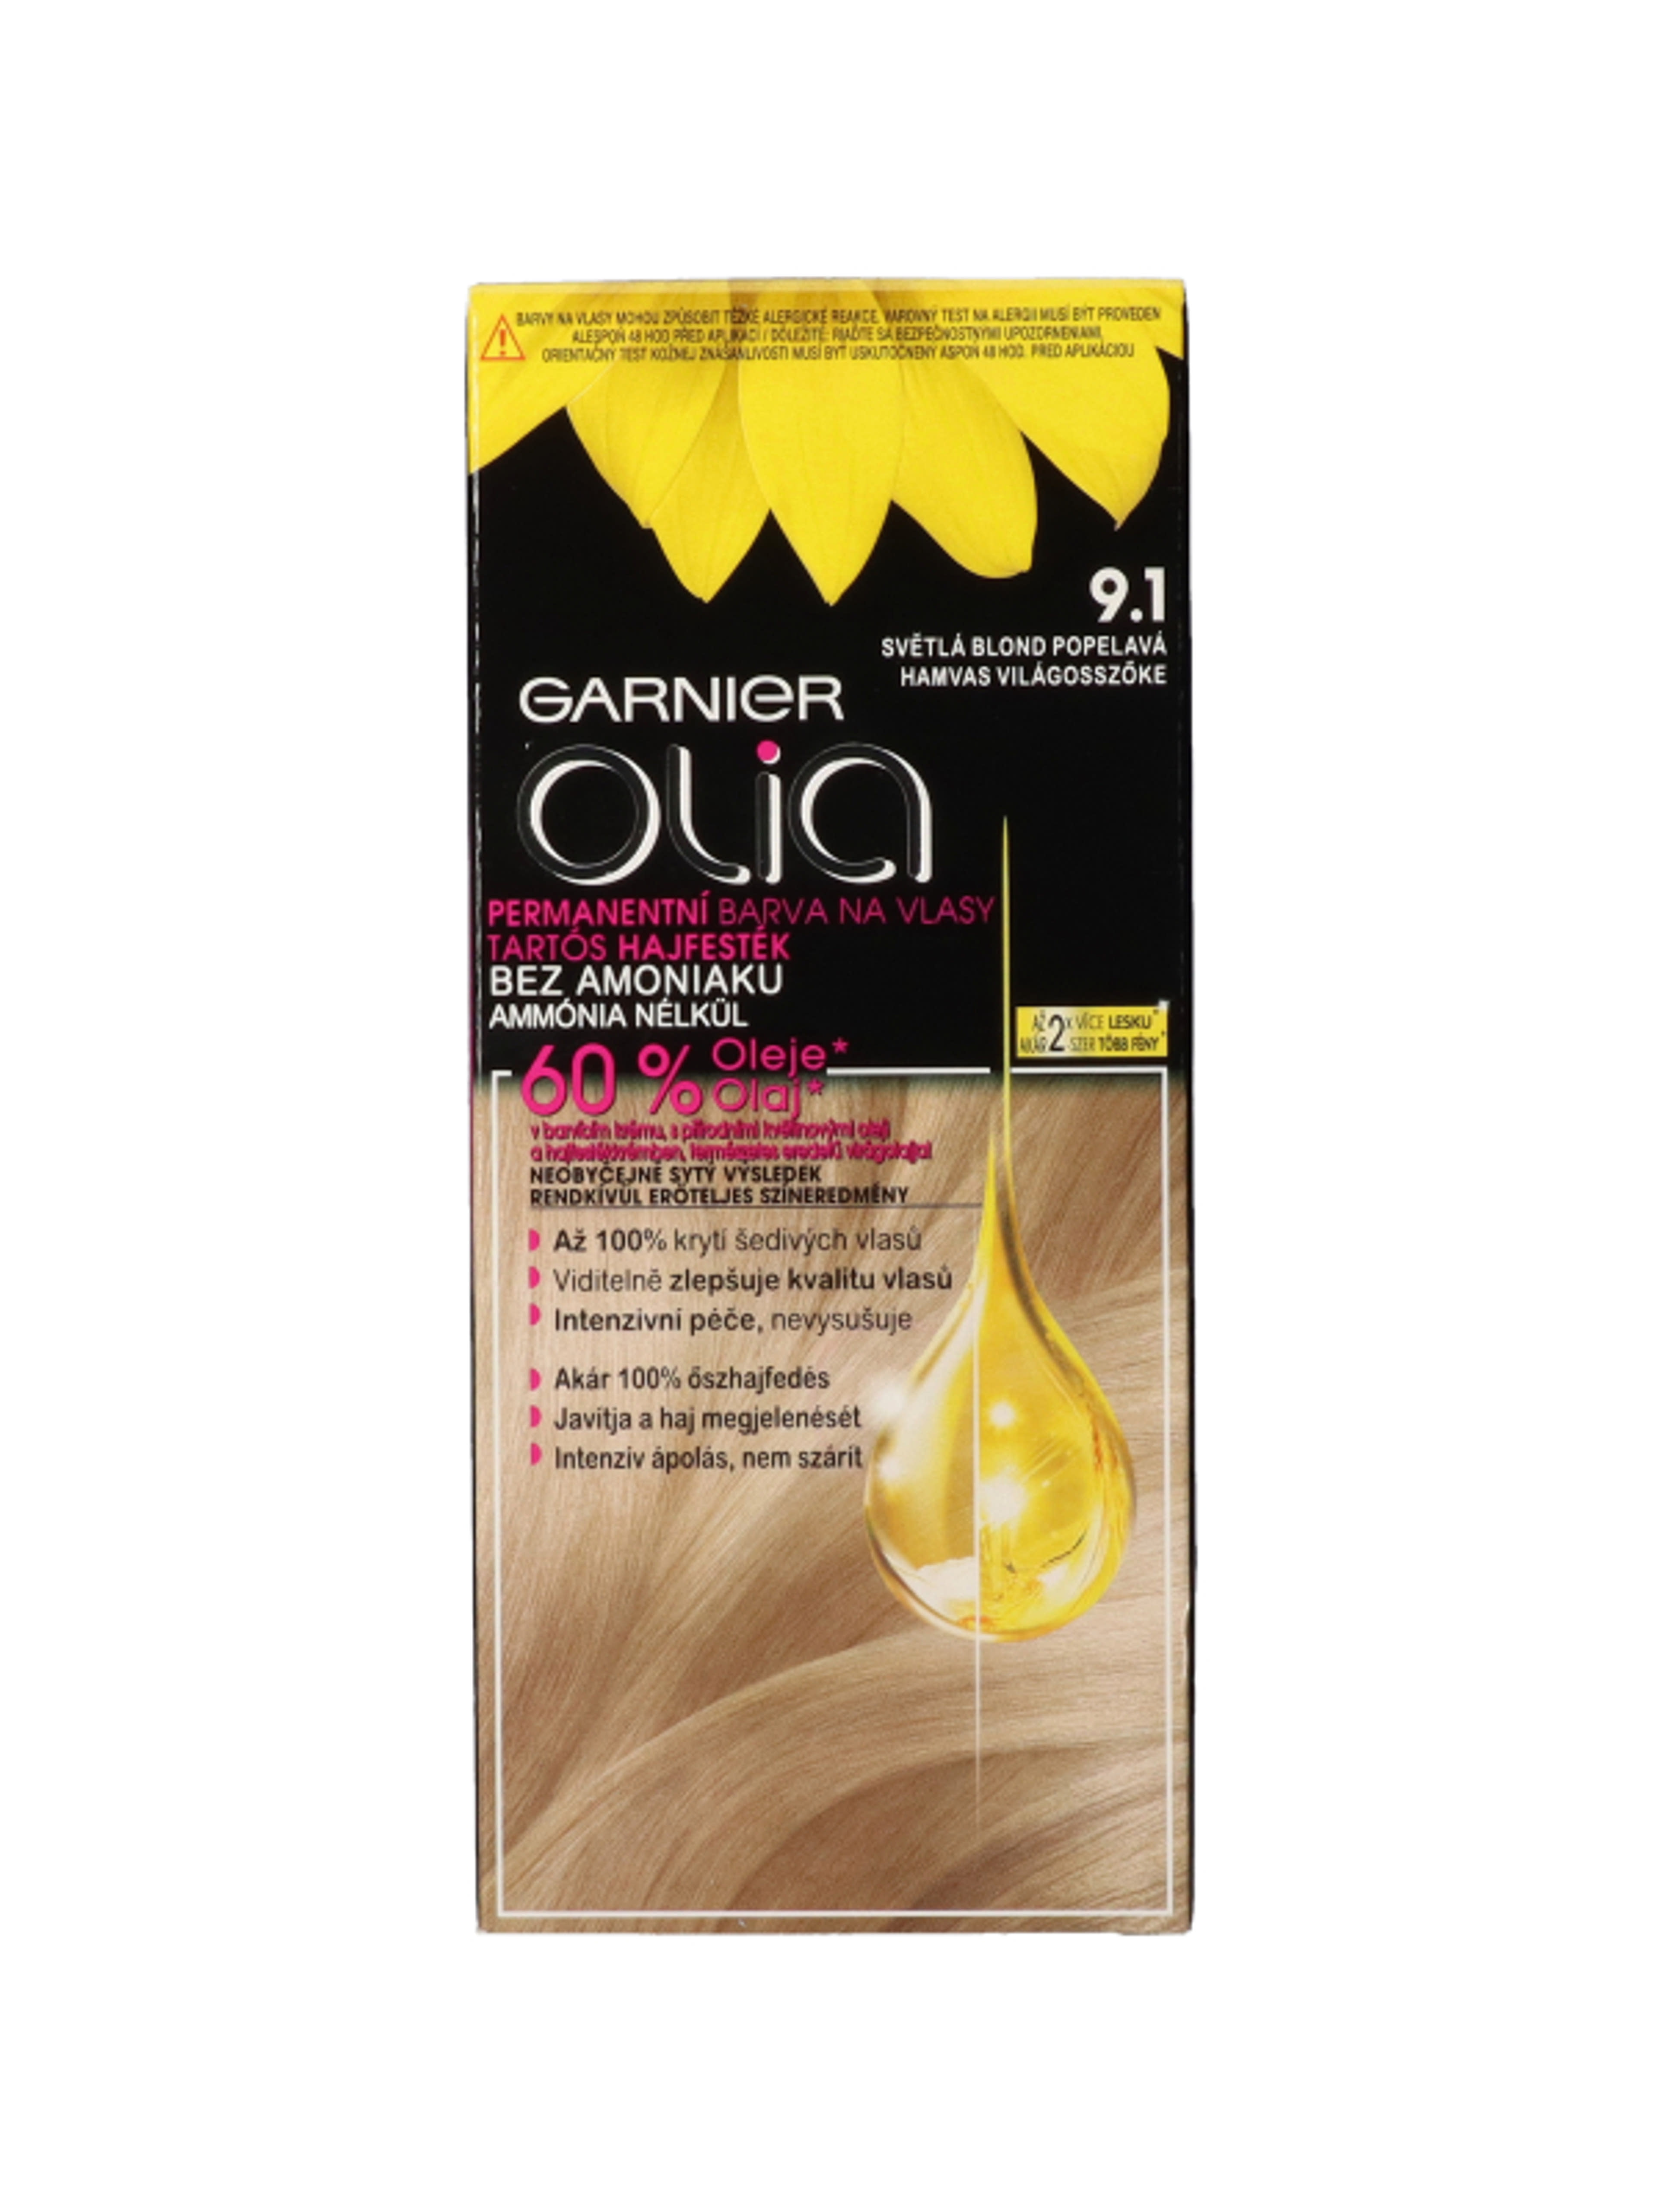 Garnier Olia tartós hajfesték 9.1 Hamvas világosszőke - 1 db